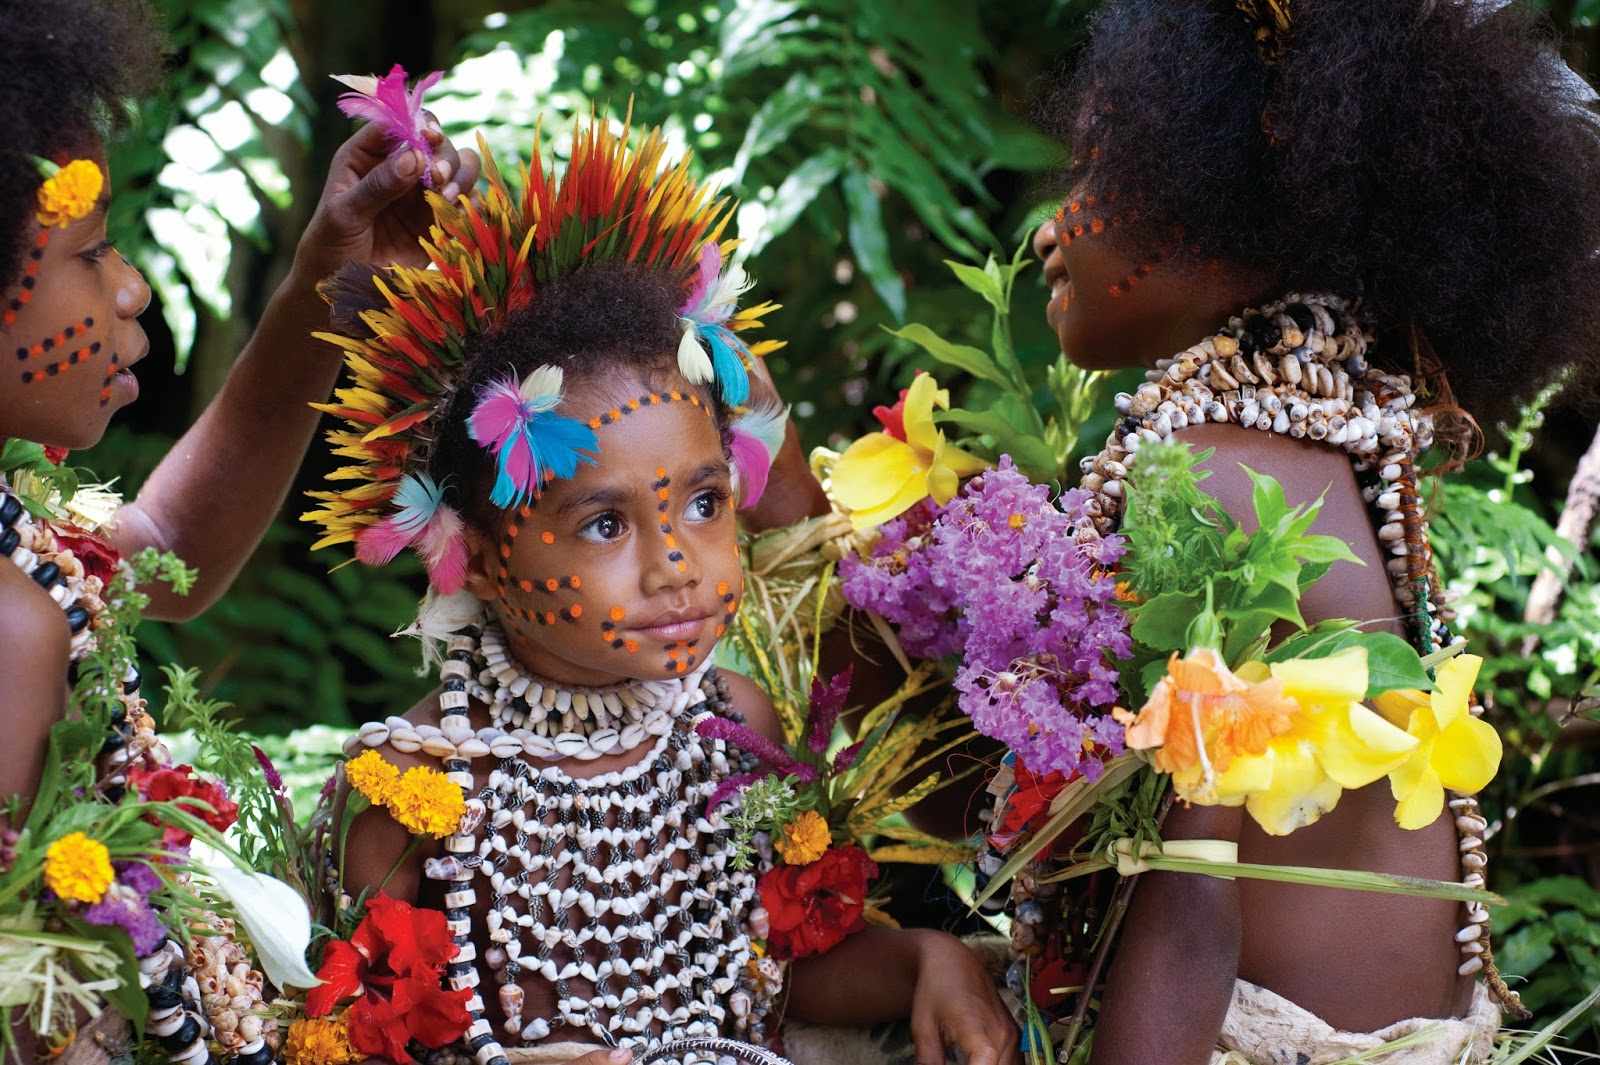 Mengenal Papua Nugini, Negara Tetangga Yang Terlupakan